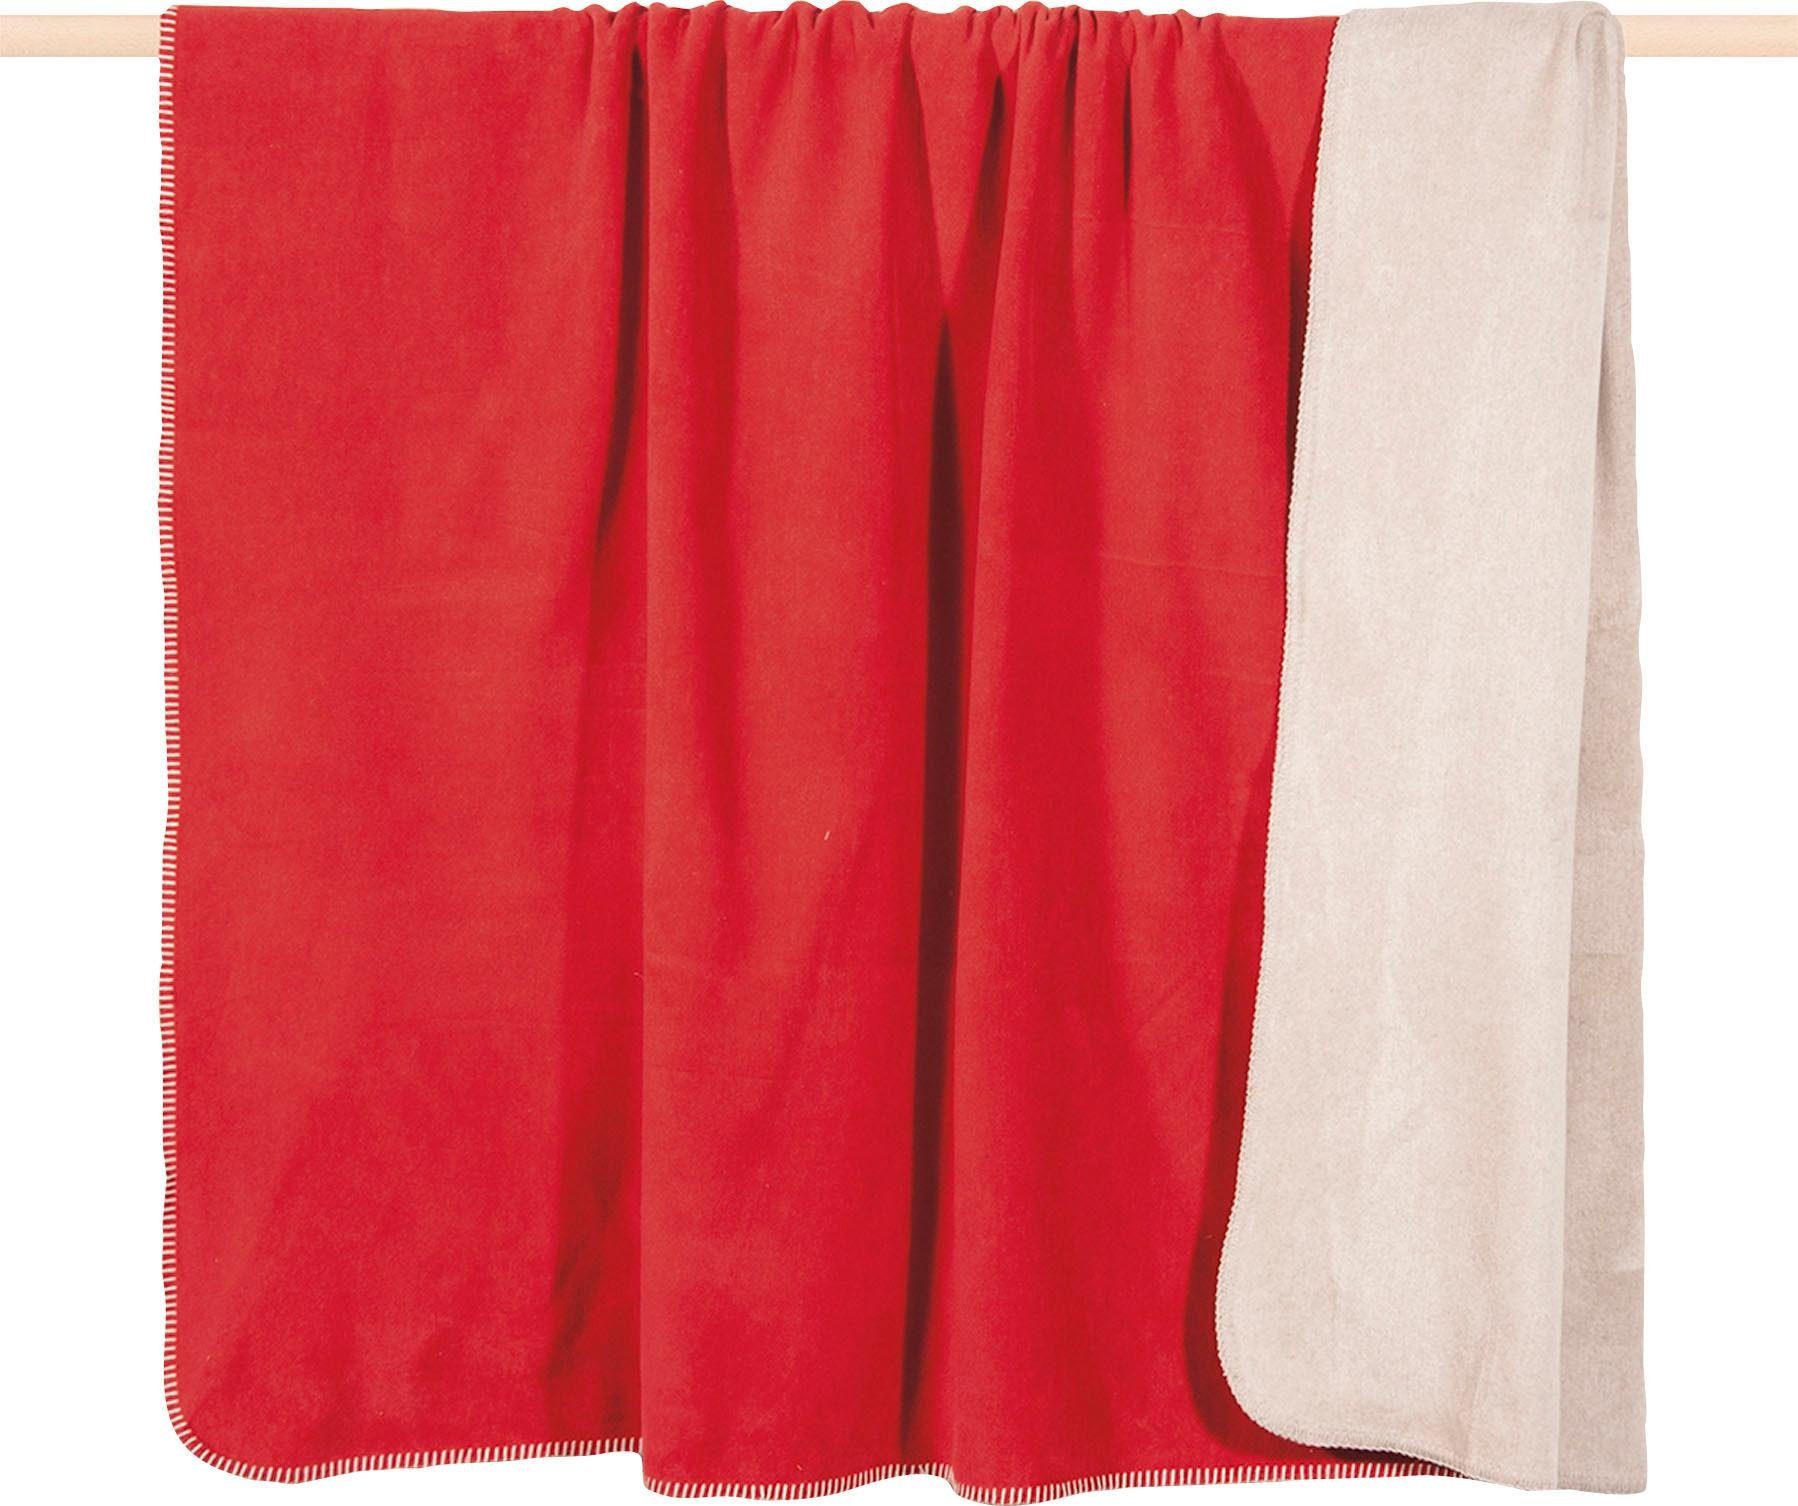 Wohndecke Hobart, PAD, in rot/creme Optik, zweifarbiger Kuscheldecke